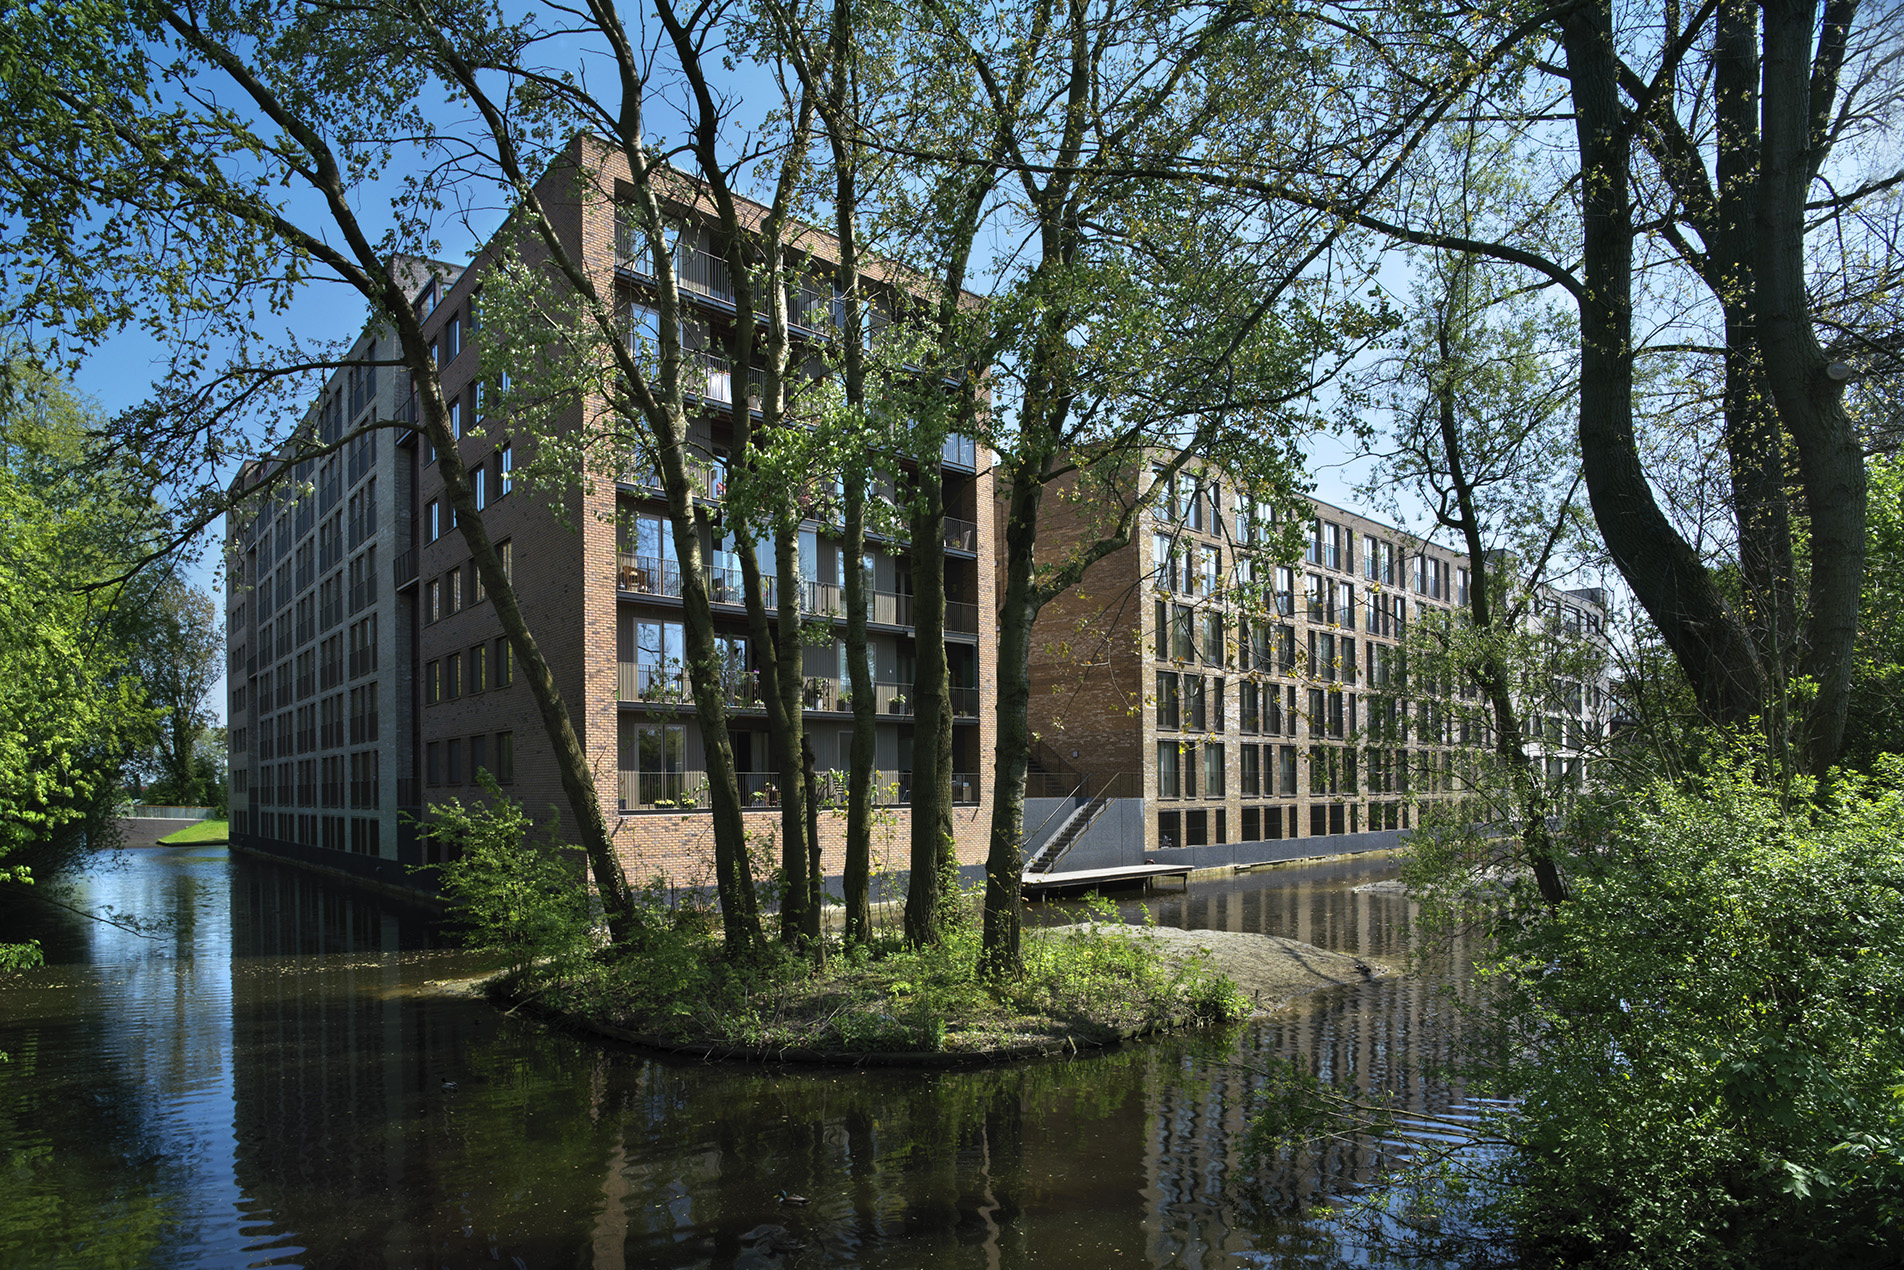 Tuinderspad mooiste gebouw van Alkmaar 2000-2015